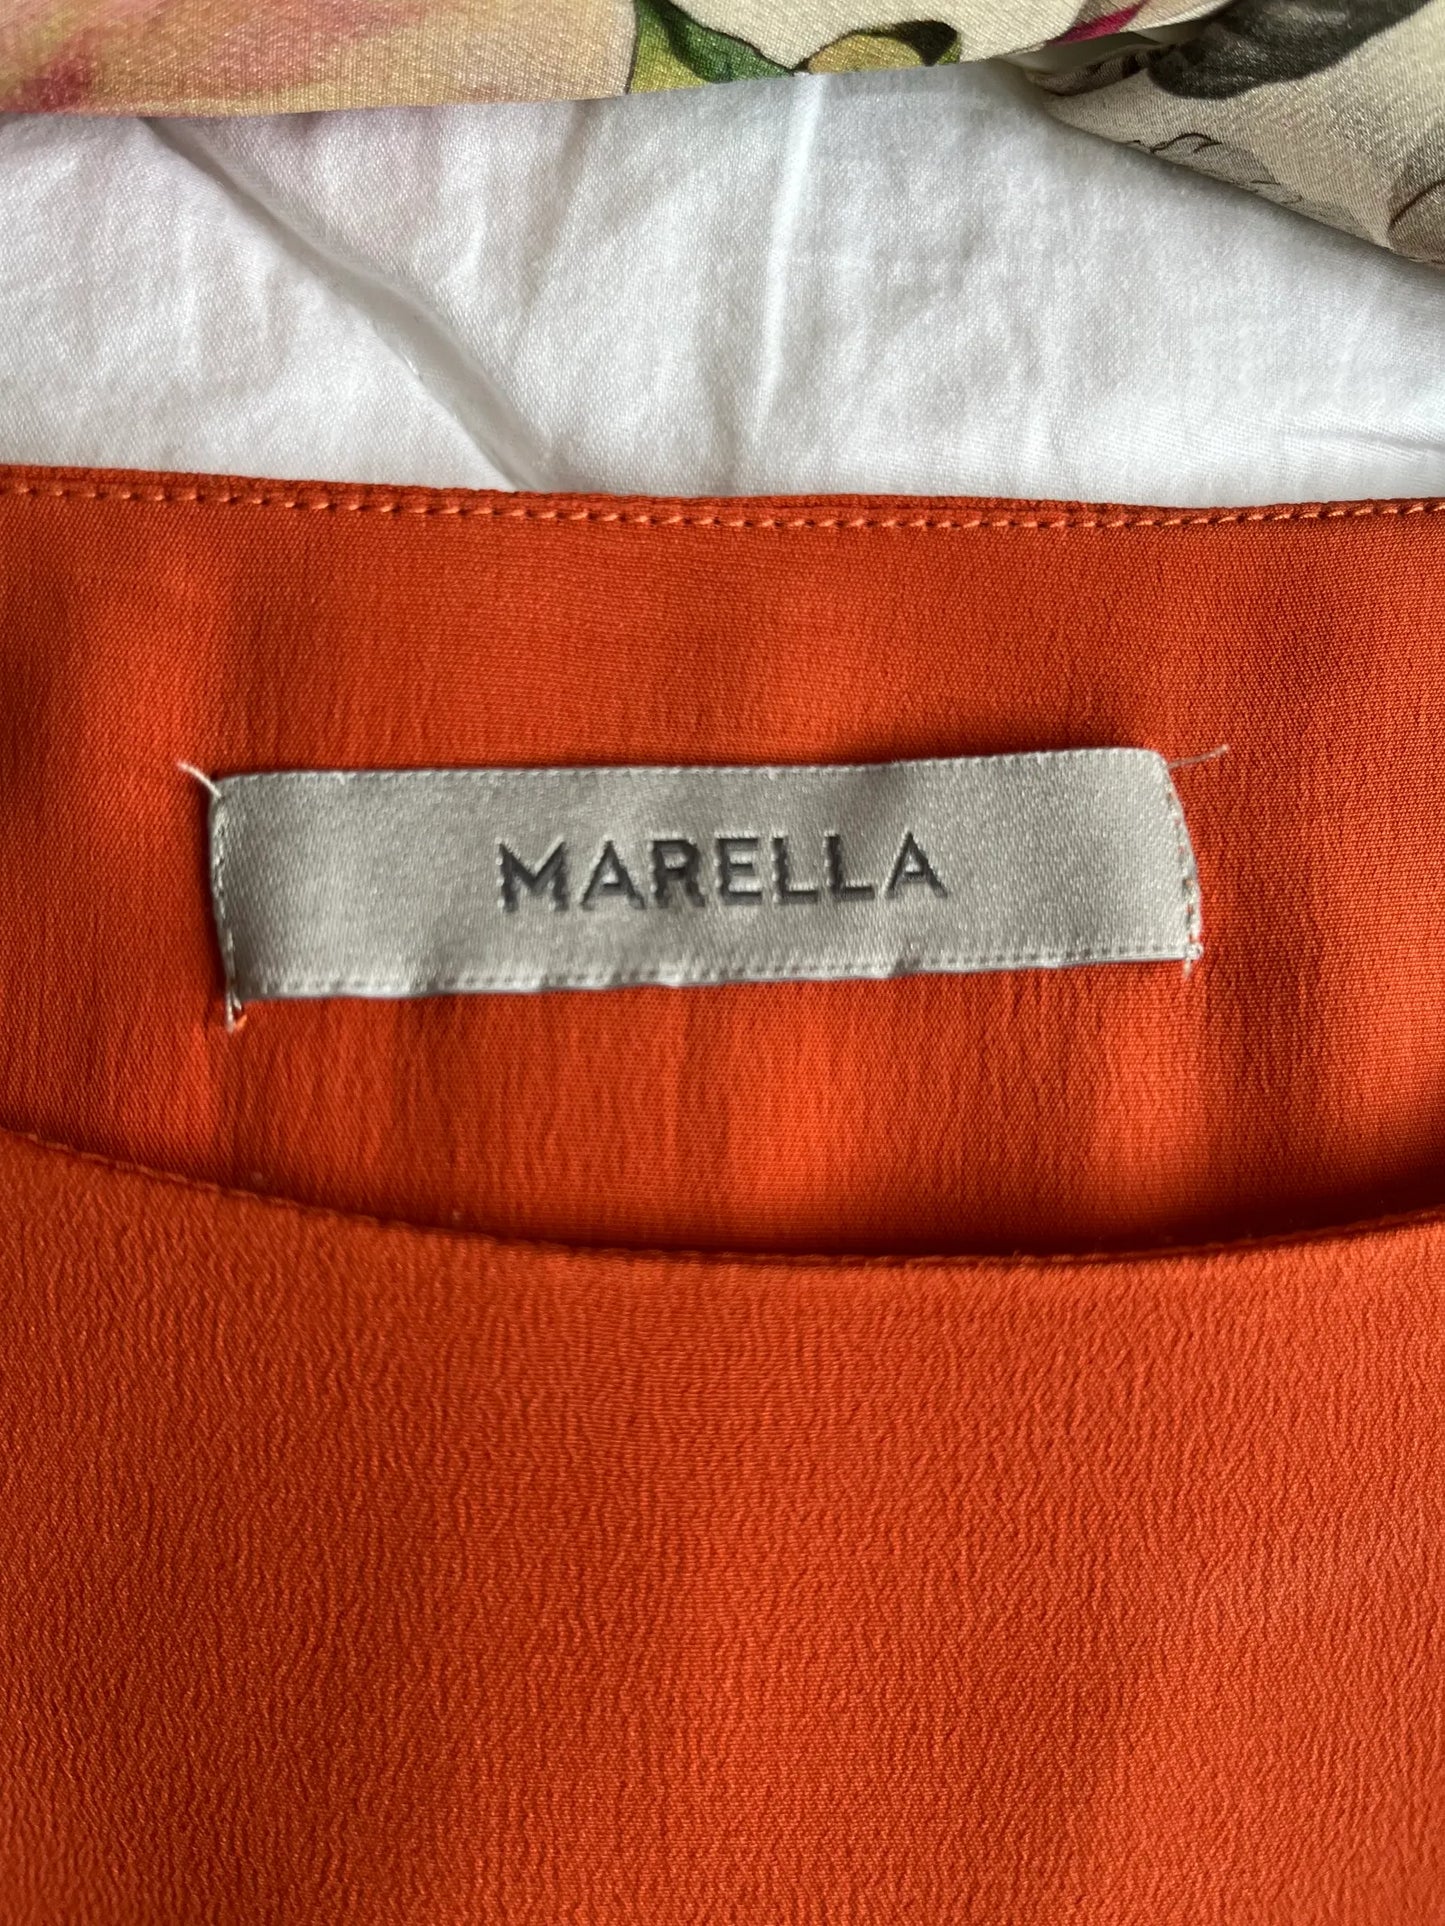 Marella-sidenklänning